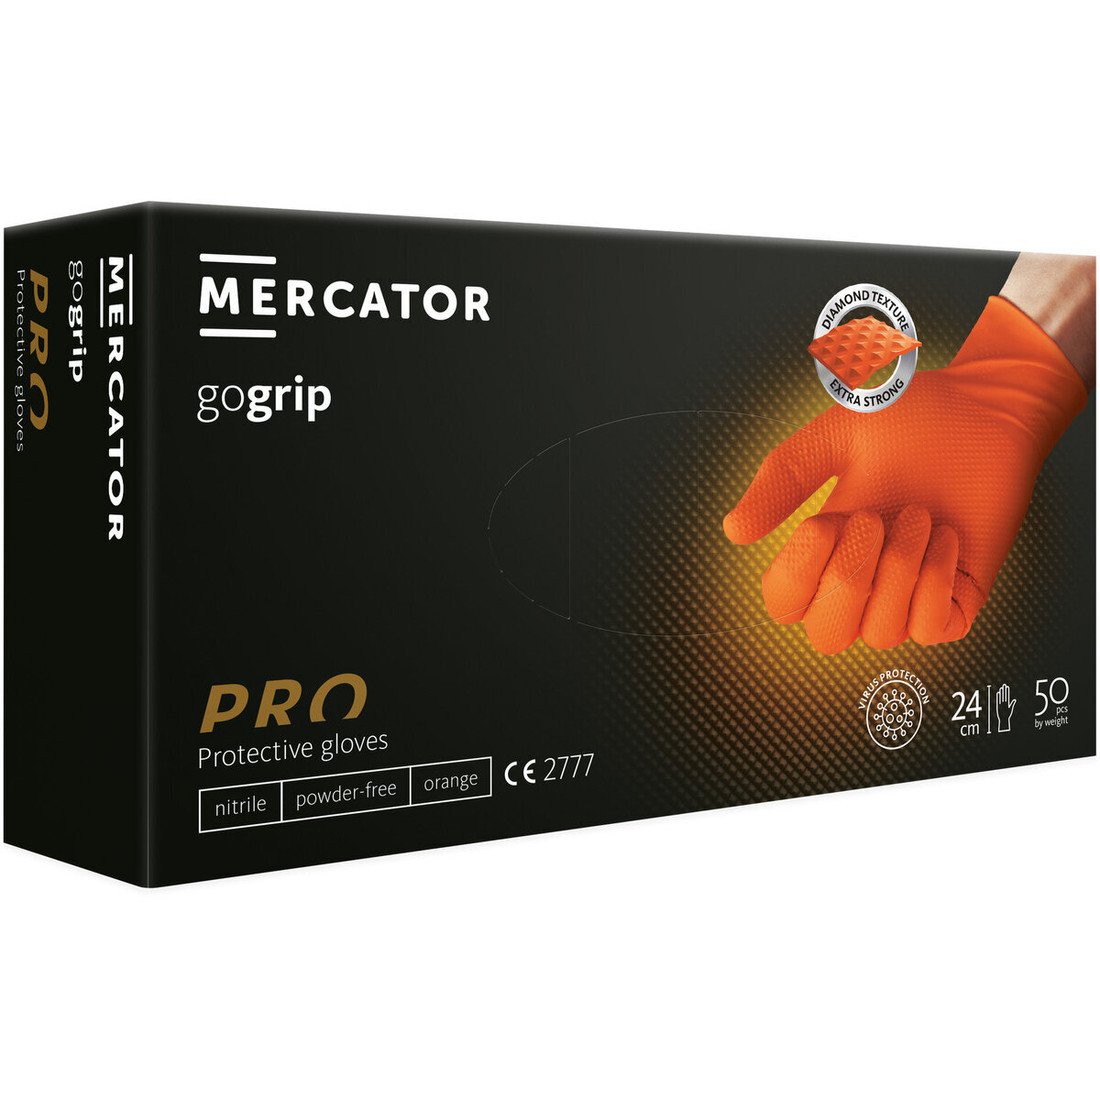 Nepudrované nitrilové rukavice MERCATOR gogrip (orange), velikost XL, balení 50 ks